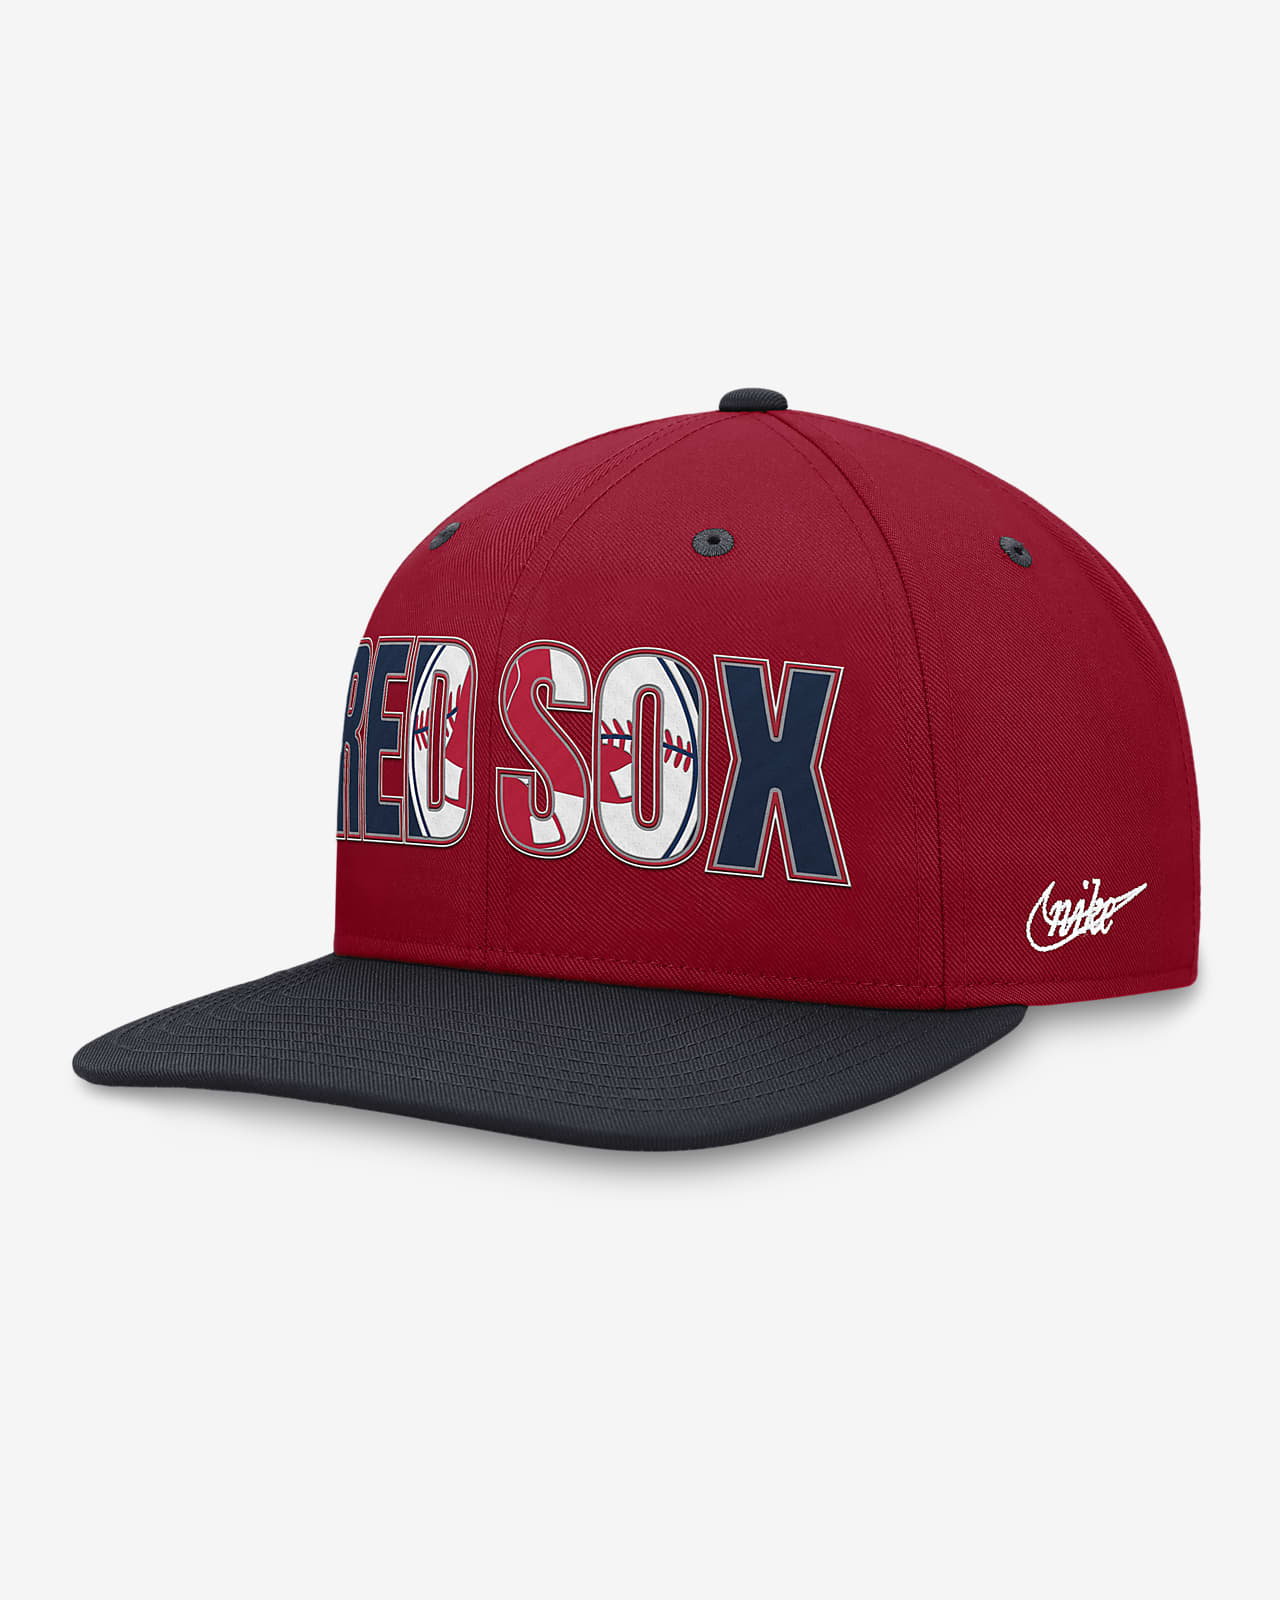 St. Louis Cardinals Nike Team Vintage Strapback Hat Black Red MLB